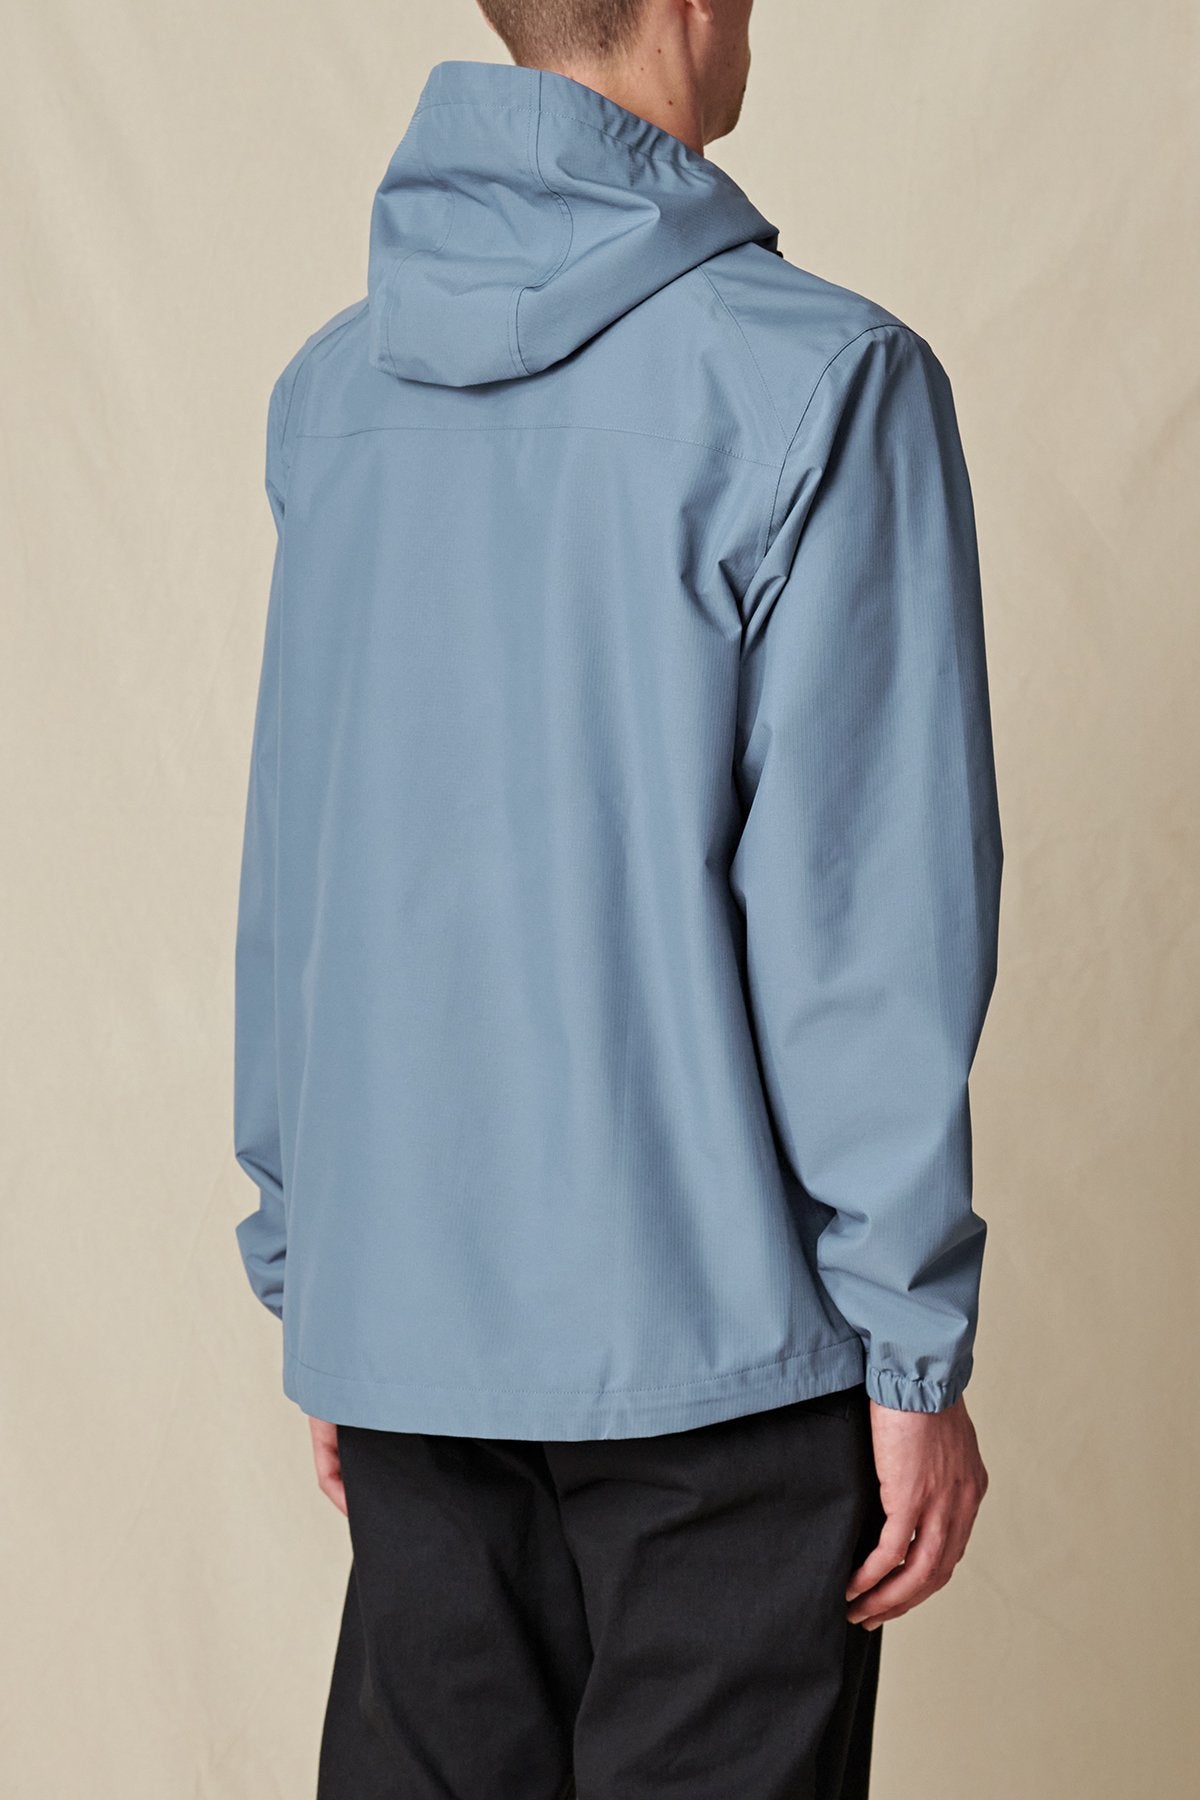 Globe Jackets - Breaker Spray Jacket in colour Slate Blue